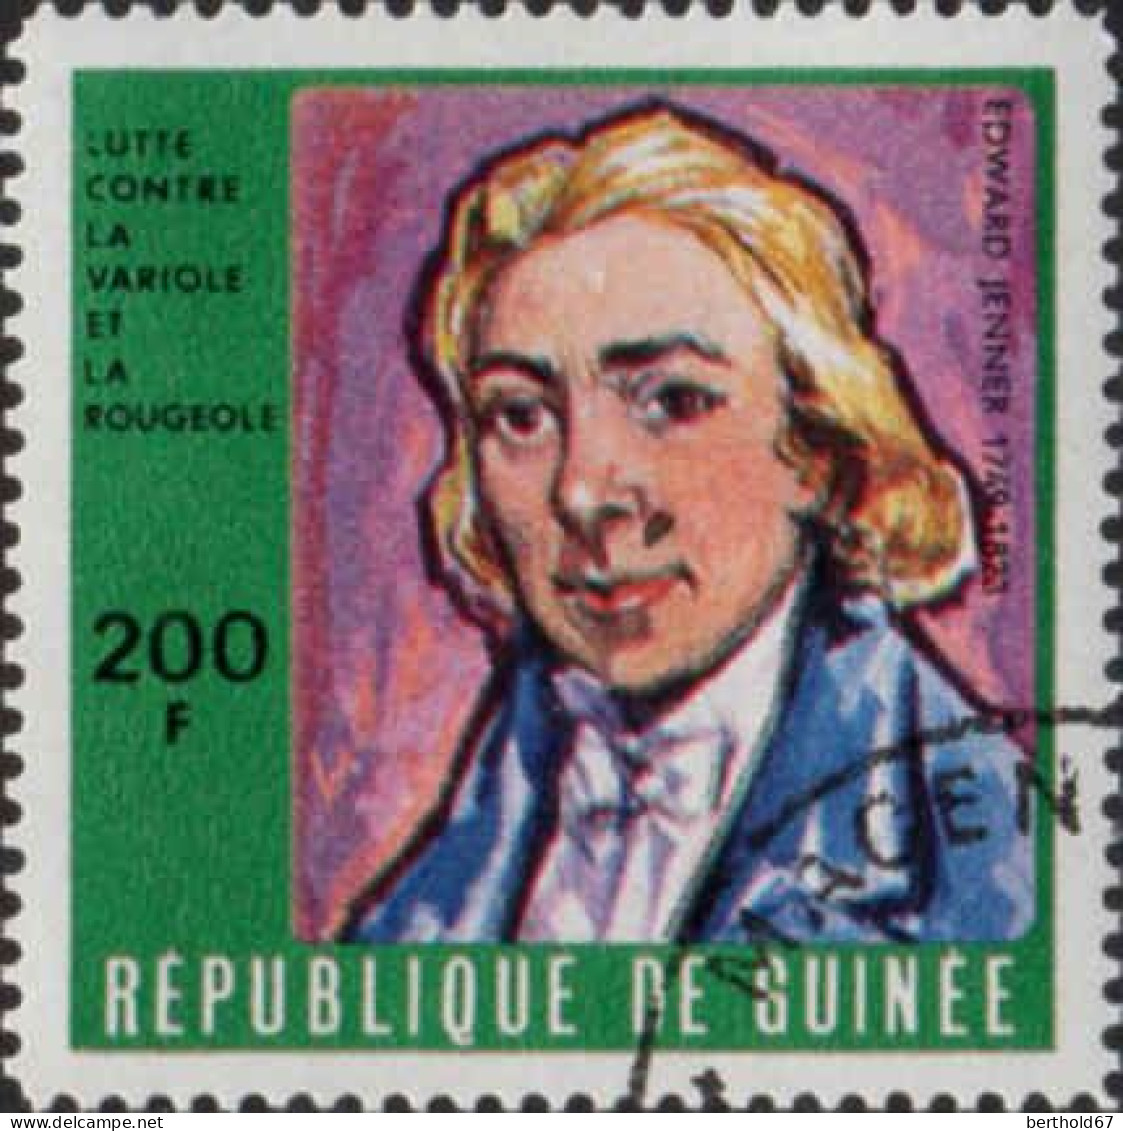 Guinée (Rep) Poste Obl Yv: 410/415 Lutte Contre La Variole Et La Rougeole (Beau Cachet Rond) - Guinée (1958-...)